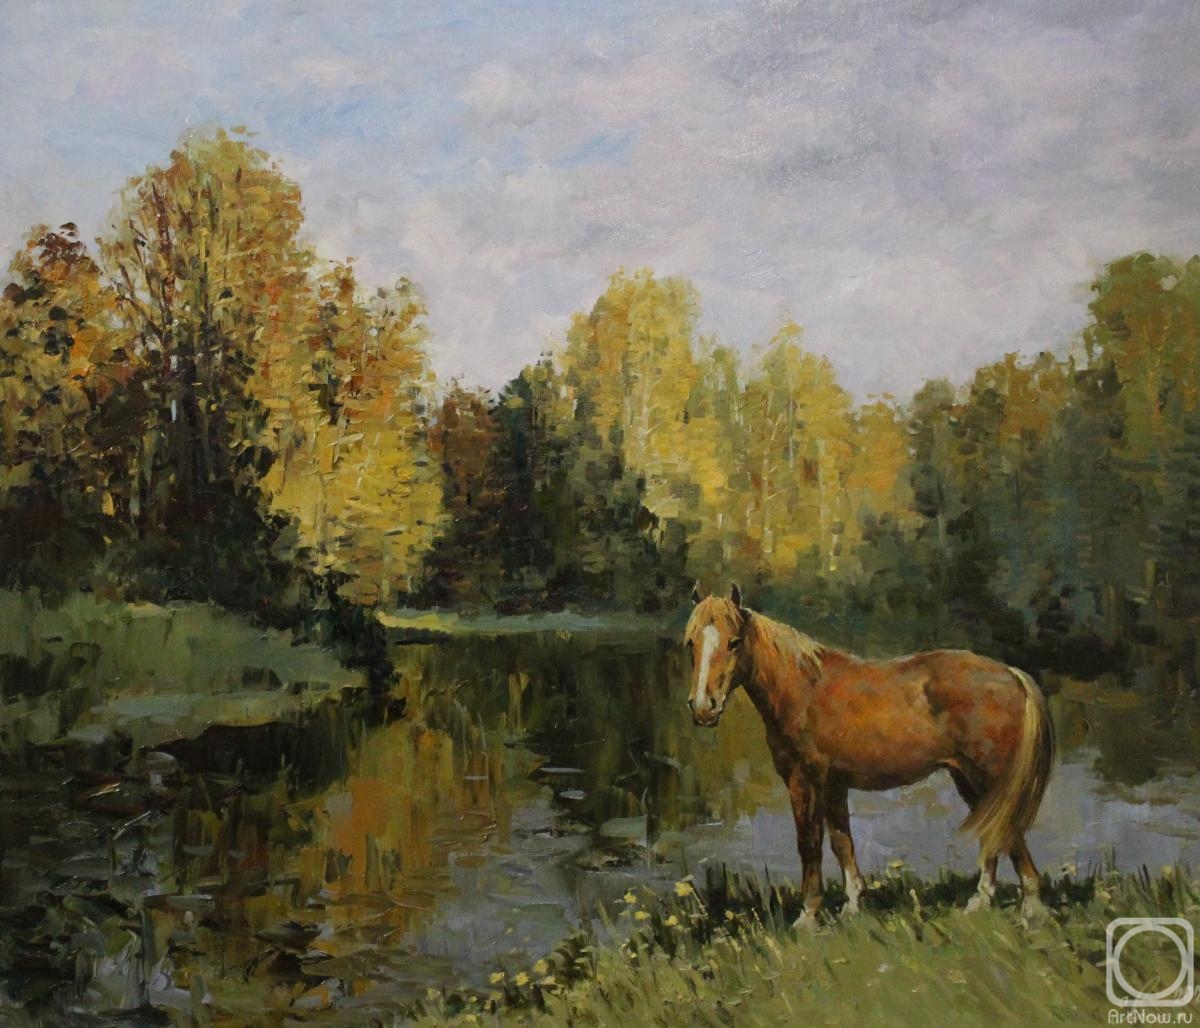 Malykh Evgeny. Autumn